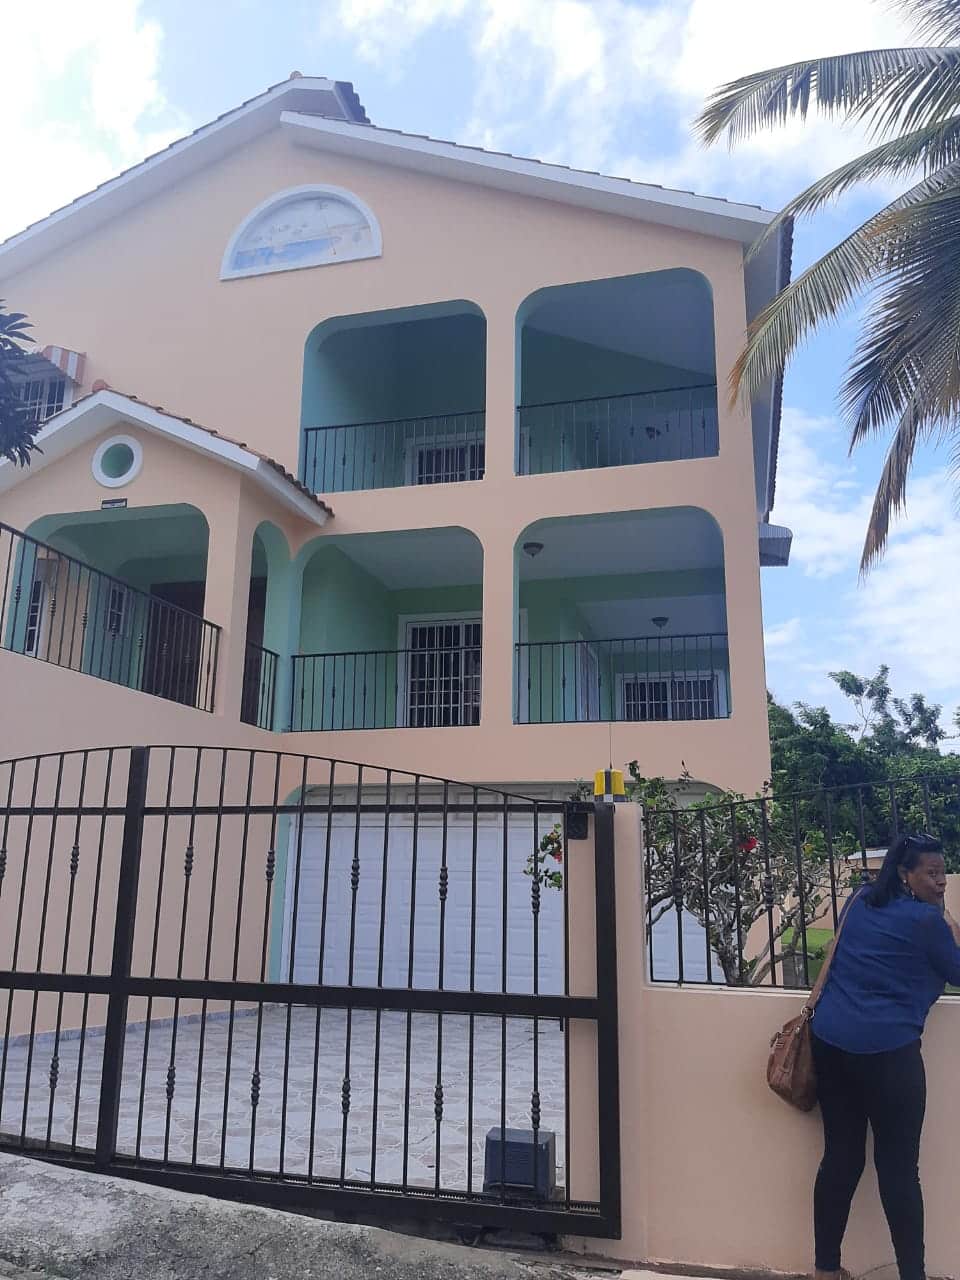 Se vende esta casa de oportunidad por motivos de viaje, en zona exclusiva de puerto plata República Dominicana.